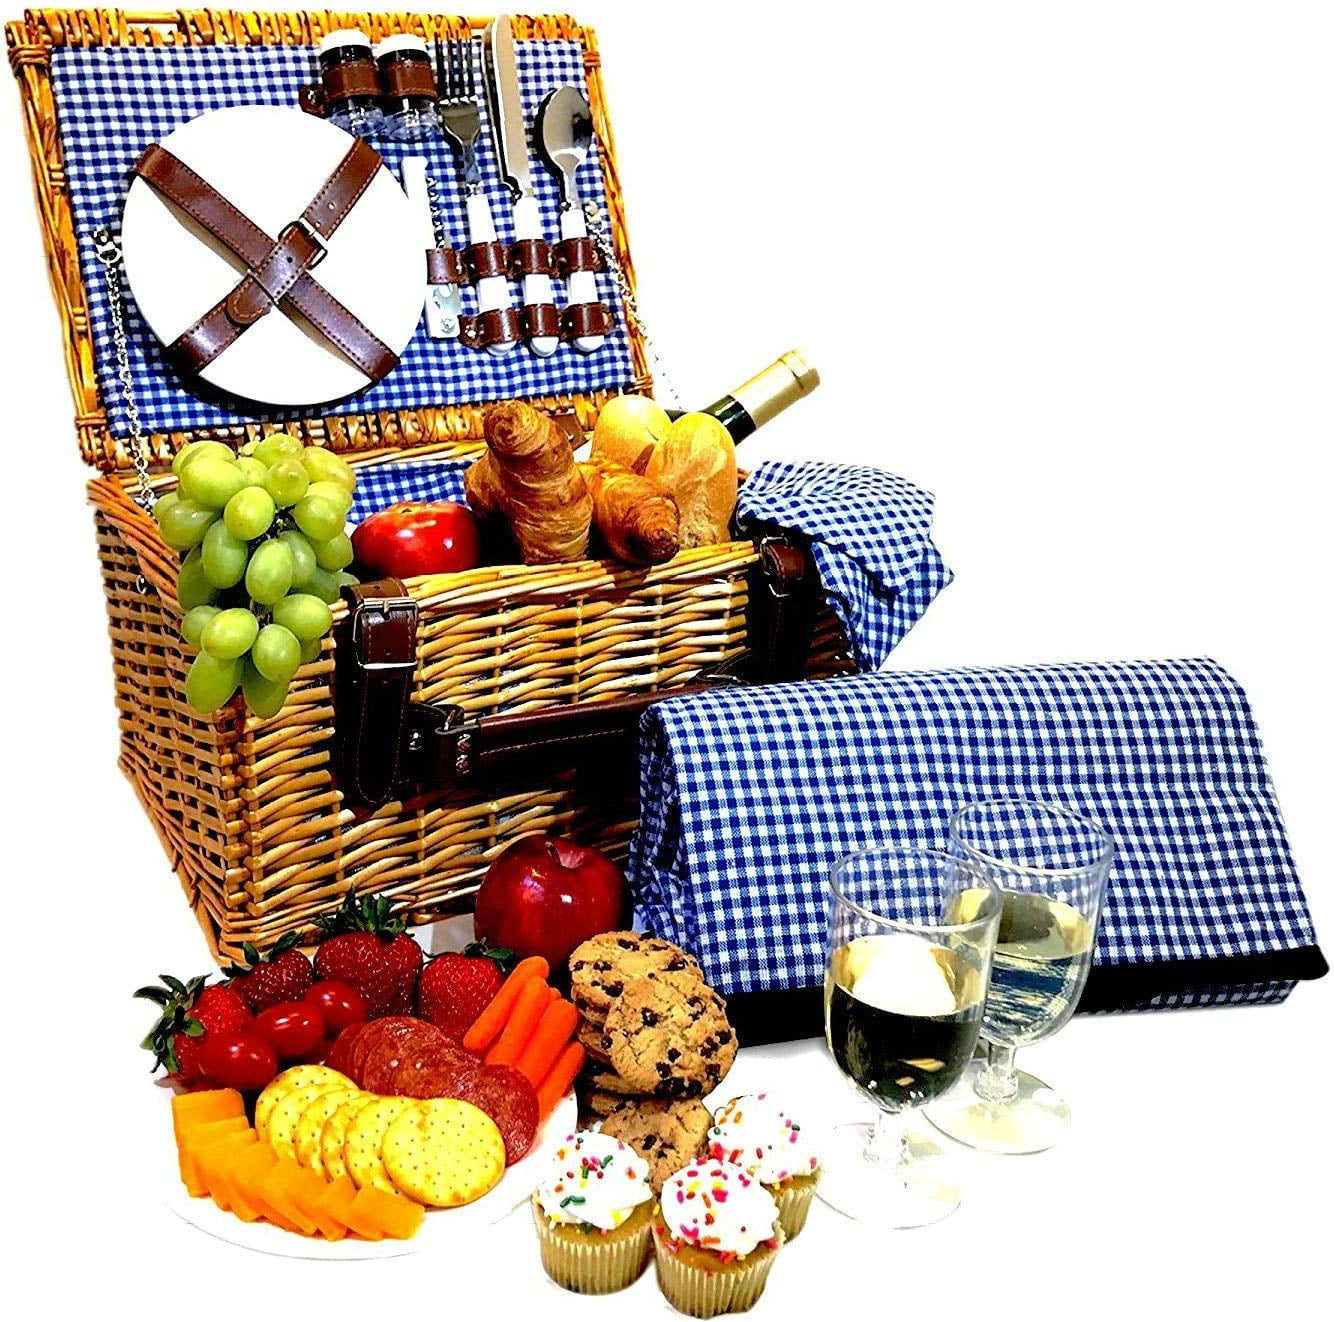 32L Foldable Picnic Hamper Basket for Food Carrier Storage Picnic Blanket 